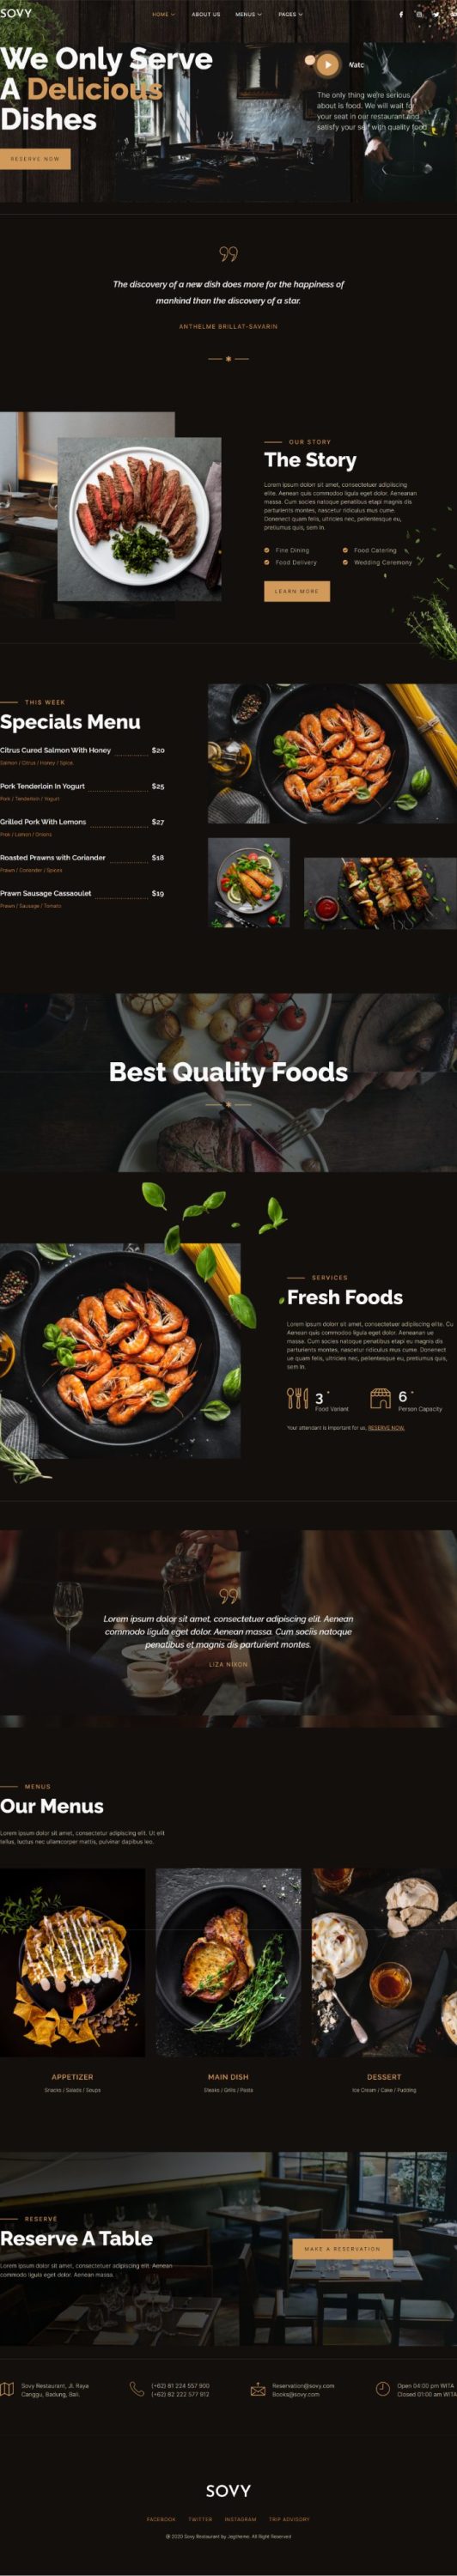 Mẫu website dịch vụ nhà hàng - Sovy 1